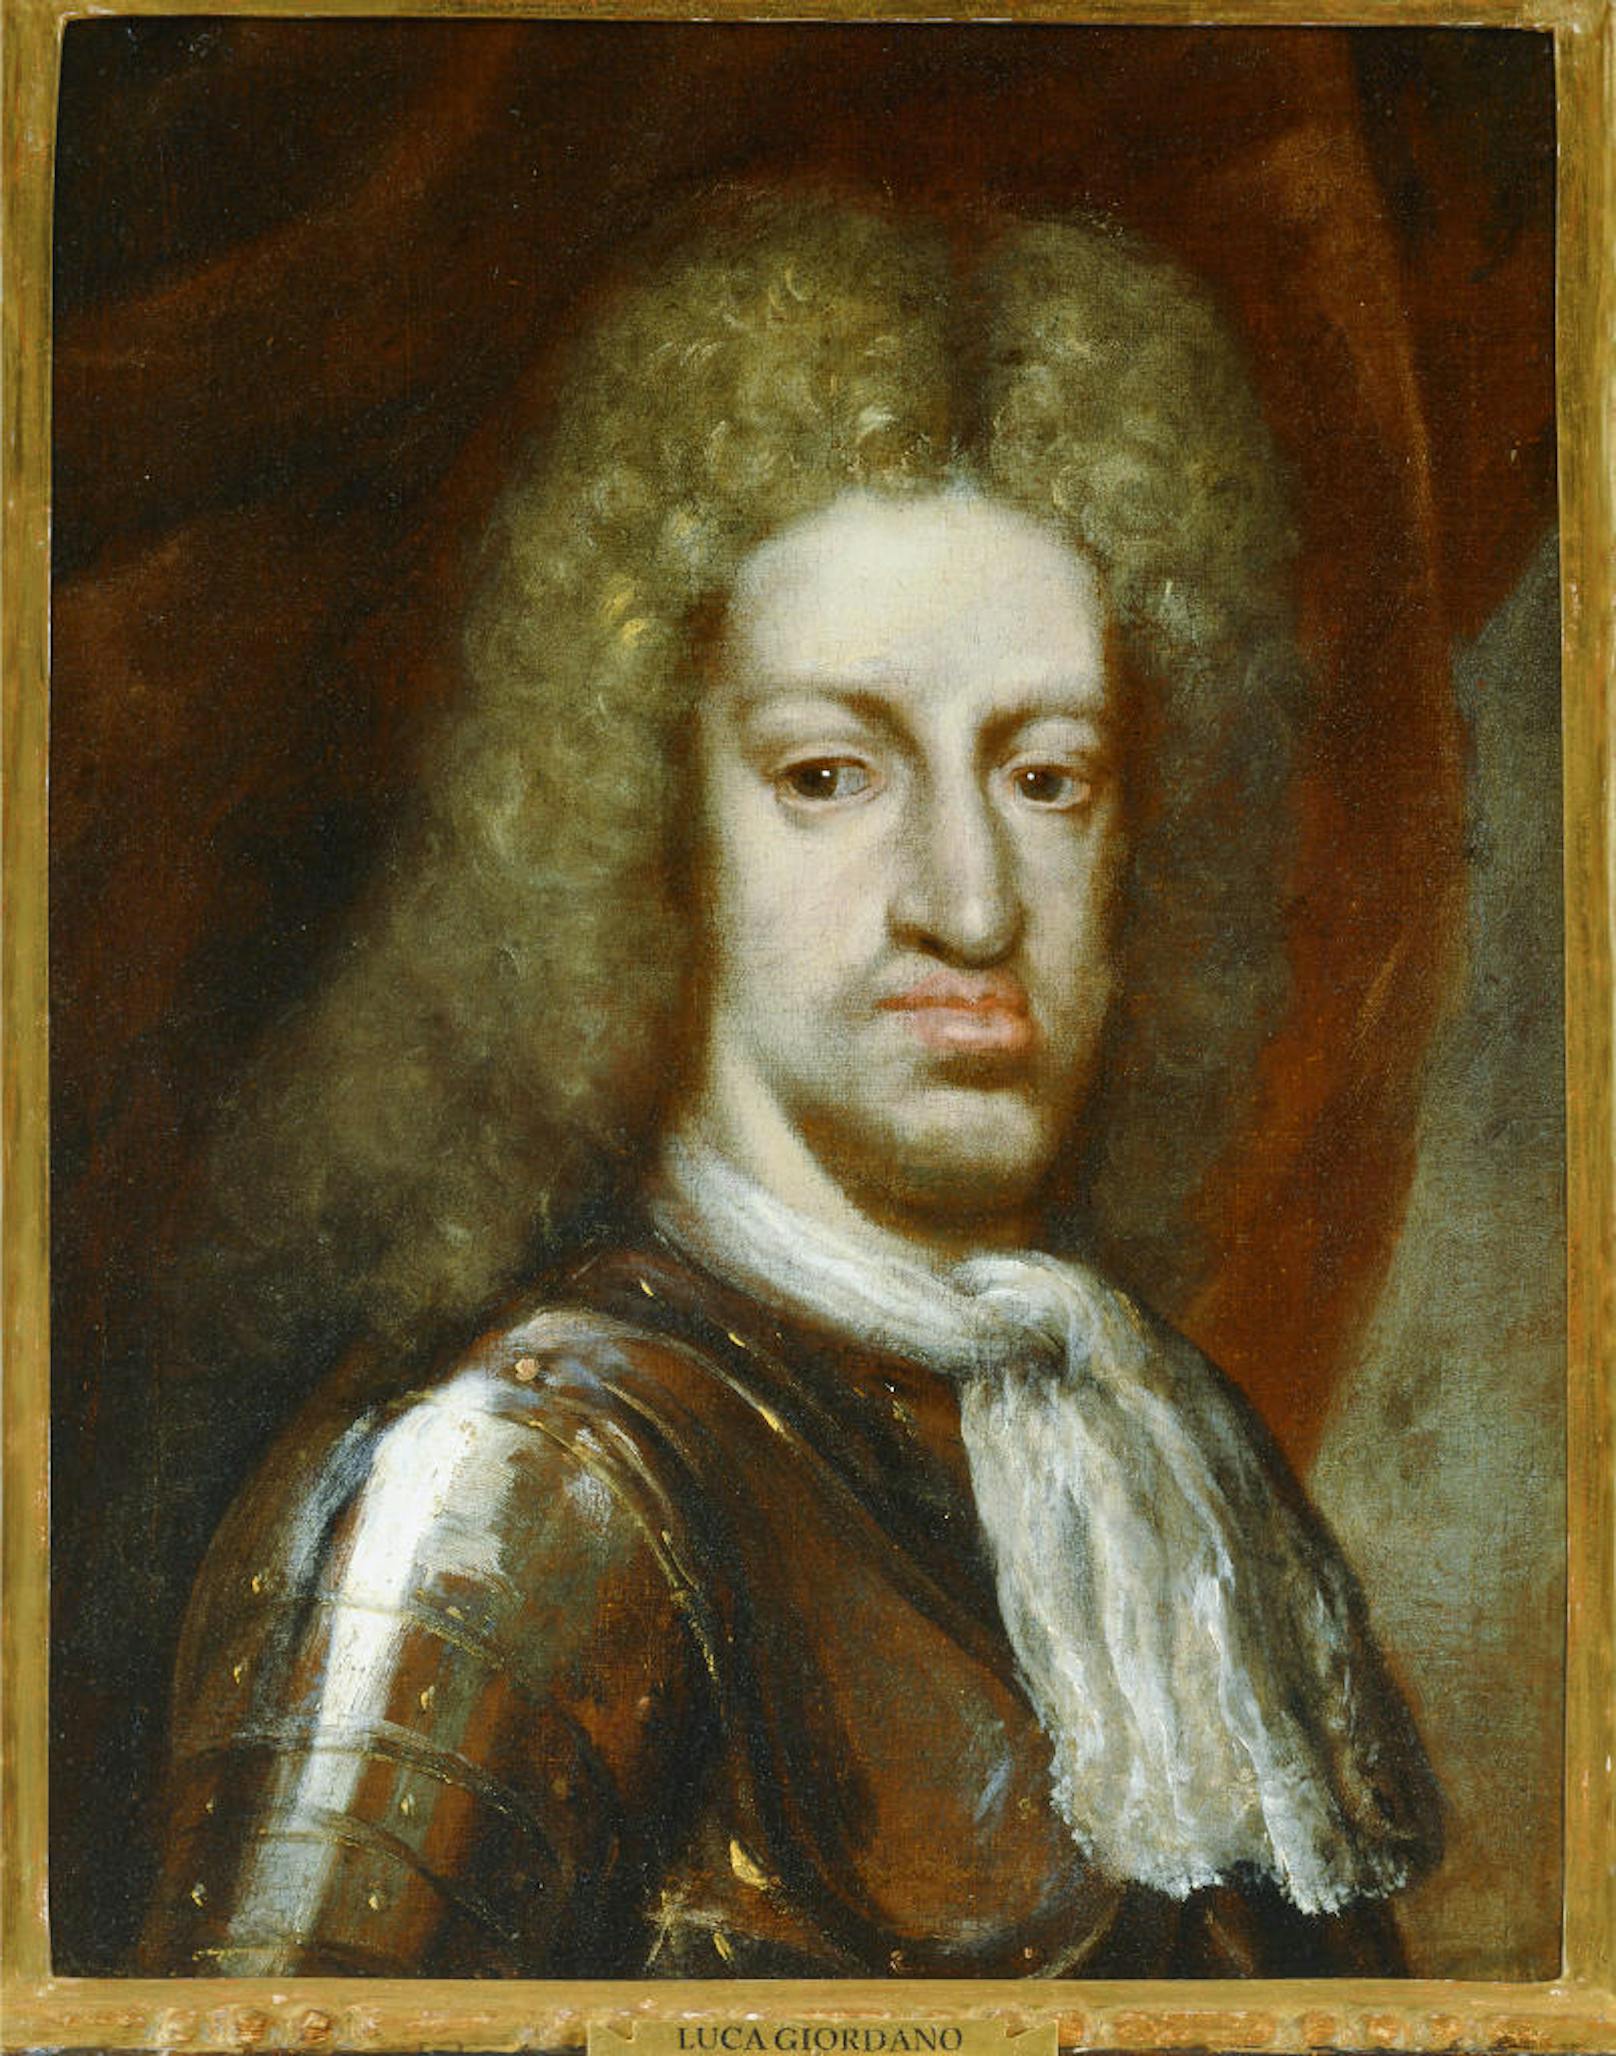 Karl II. von Spanien (1661 - 1700) war der letzte Habsburger auf dem spanischen Thron. Er war der Sohn von Philipp IV. und Maria Anna von Österreich, auch sie waren beide Habsburger. Durch die Inzucht war er nicht nur körperlich missgebildet sondern auch geistig unterentwickelt. Sein Tod löste den Spanischen Erbfolgekrieg aus.